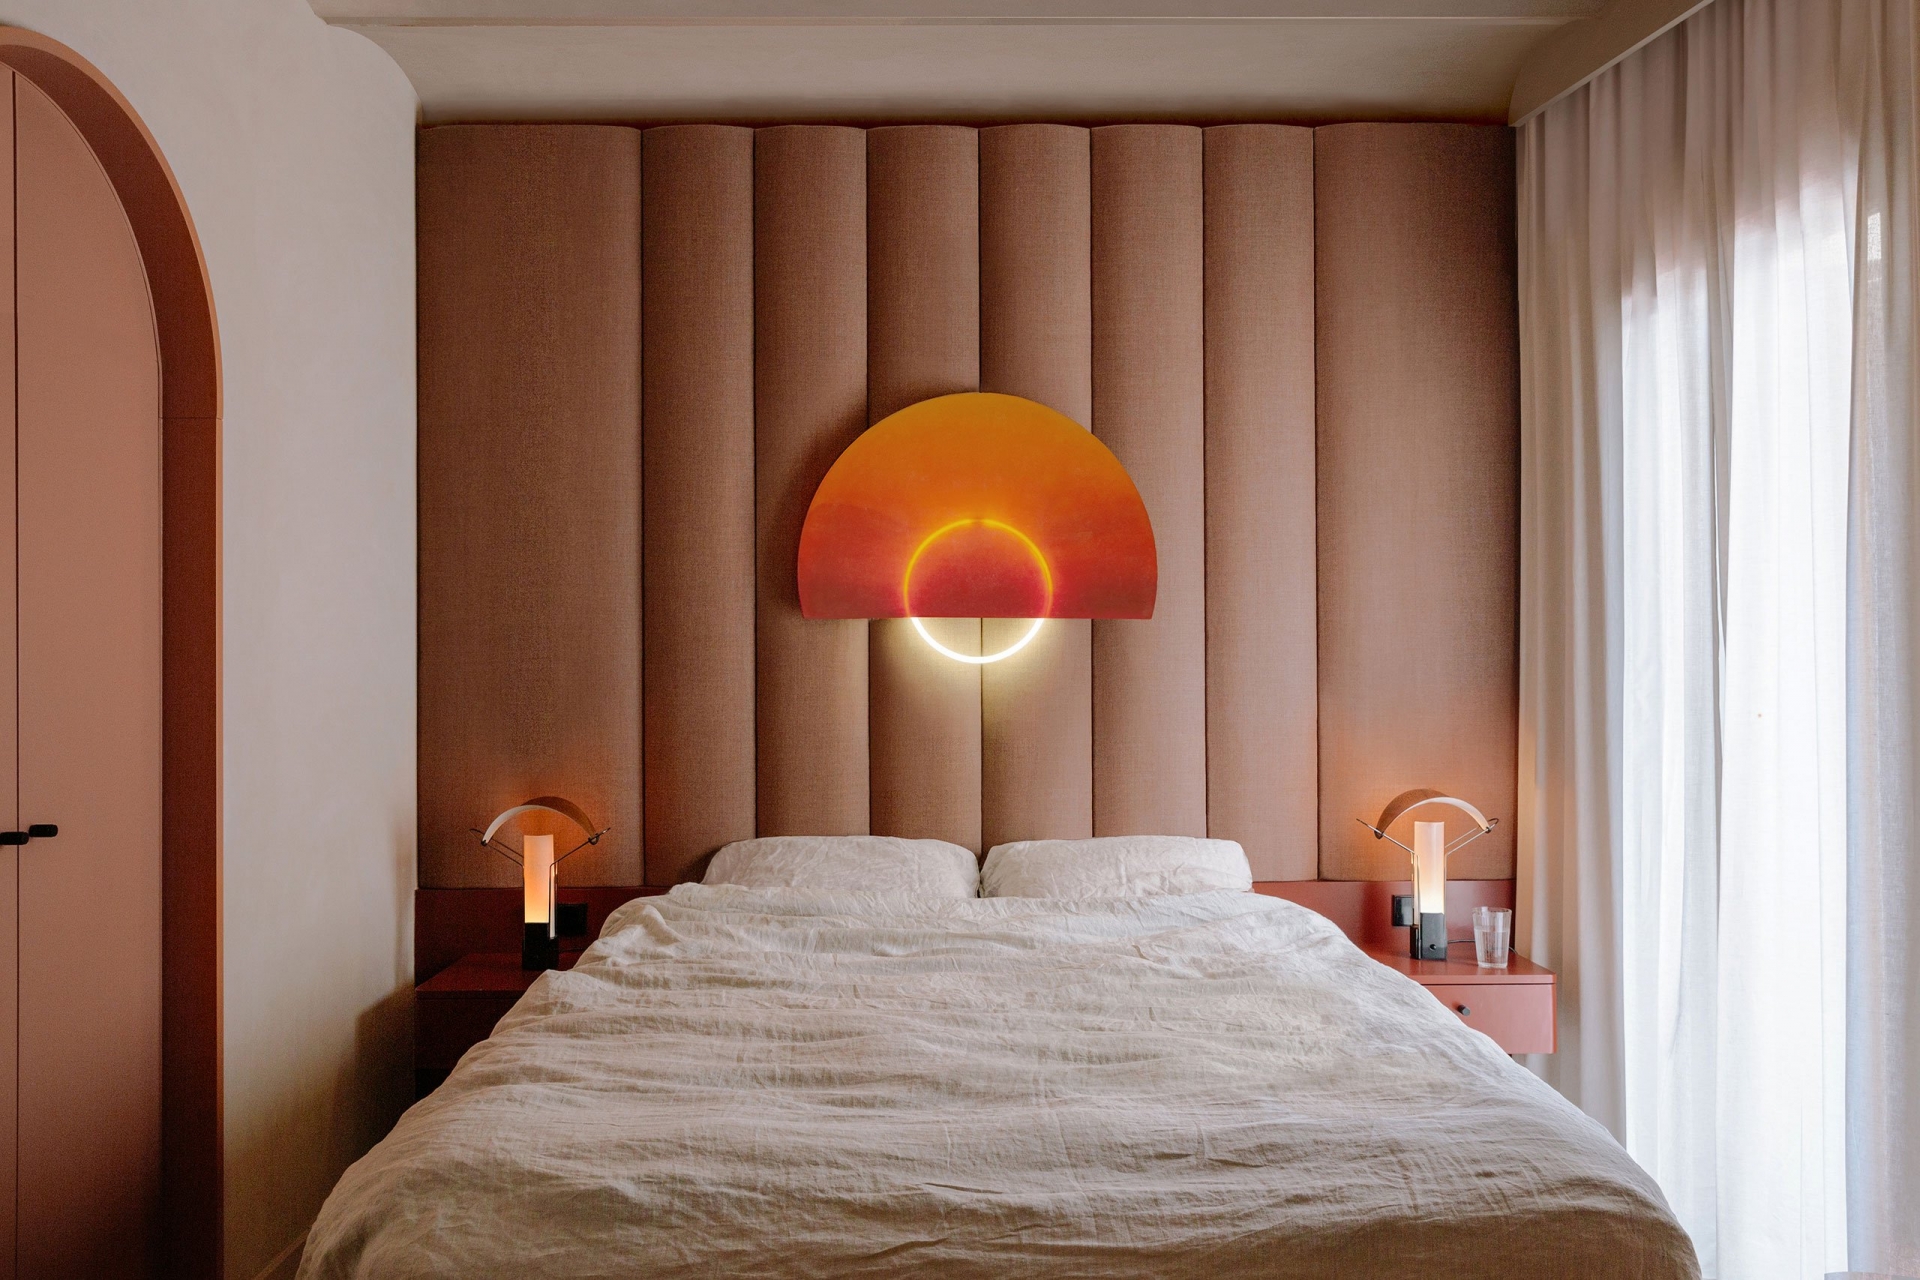 Hệ thống đèn chiếu sáng cùng kiểu dáng vòm cong như nửa vầng trăng soi sáng lãng mạn cho phòng ngủ.